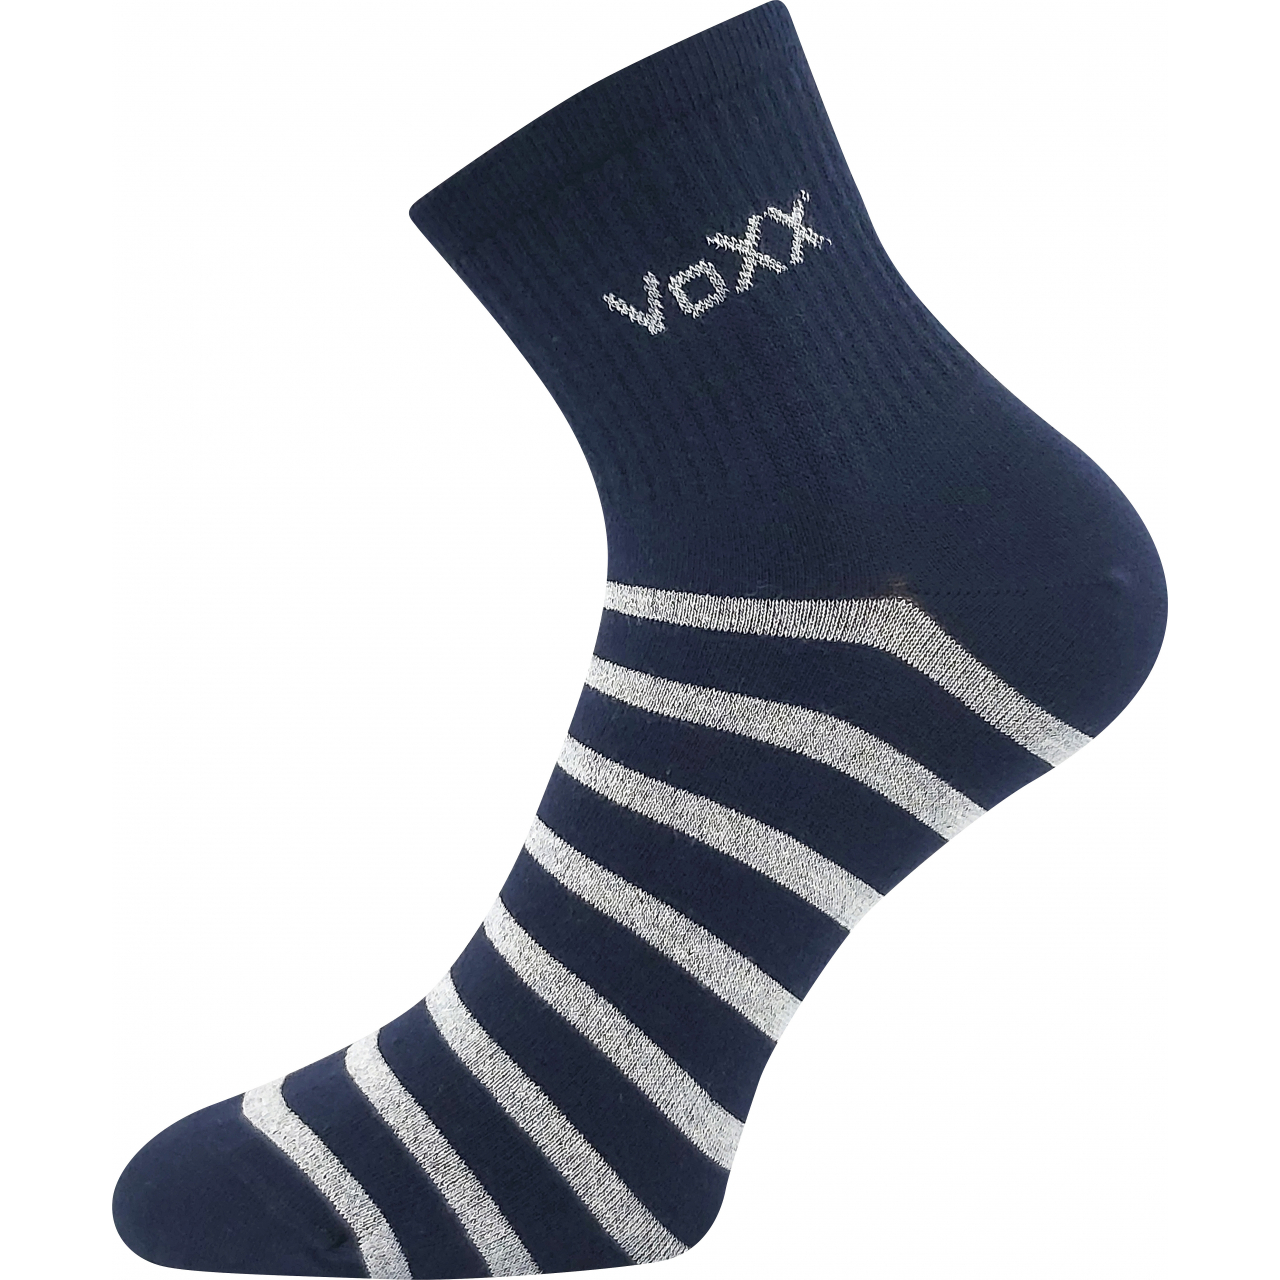 Ponožky dámské klasické Voxx Boxana Pruhy - tmavě modré-šedé, 39-42